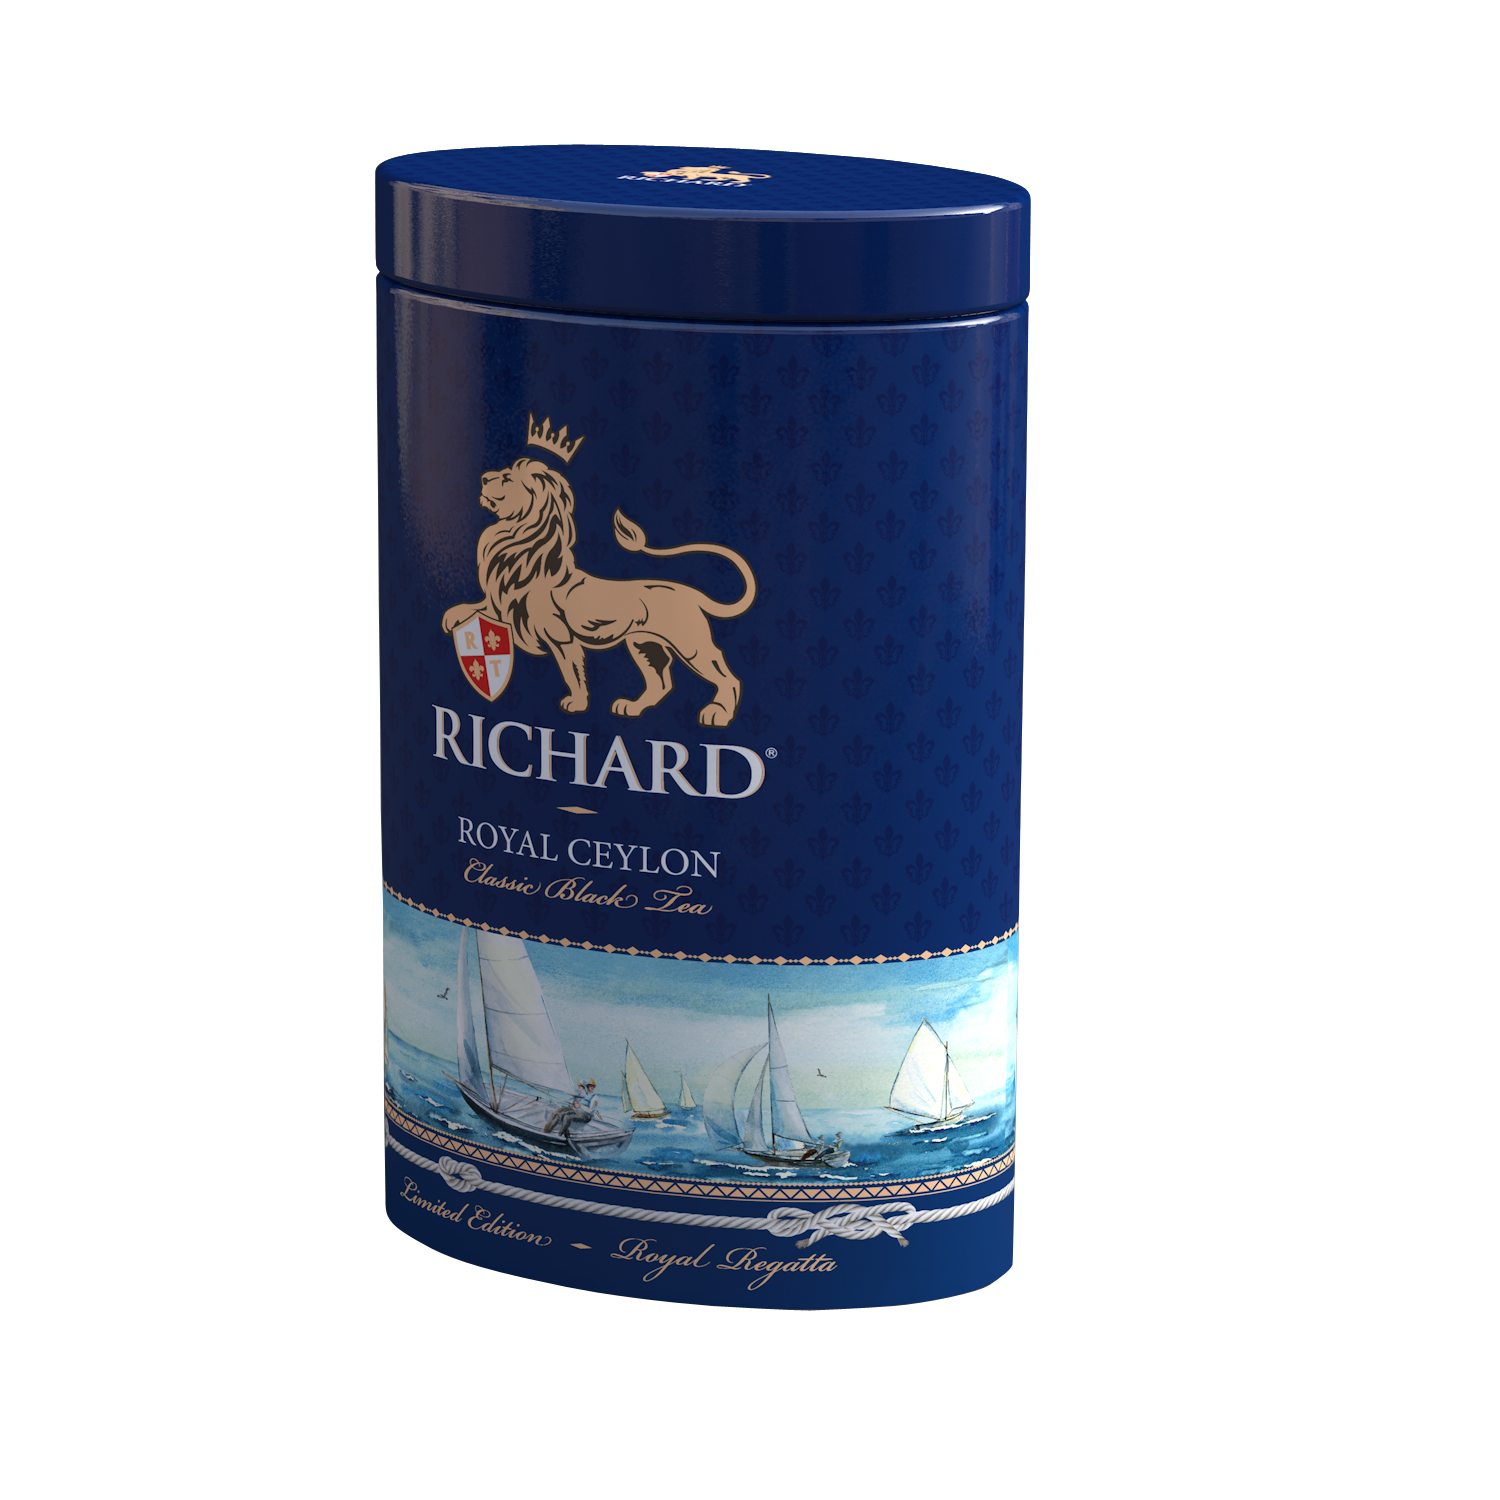 Royal Ceylon fekete tea, szálas, 80g Regatta-fémdoboz - RichardTeavn - vásároljon a 2690.00 Ft